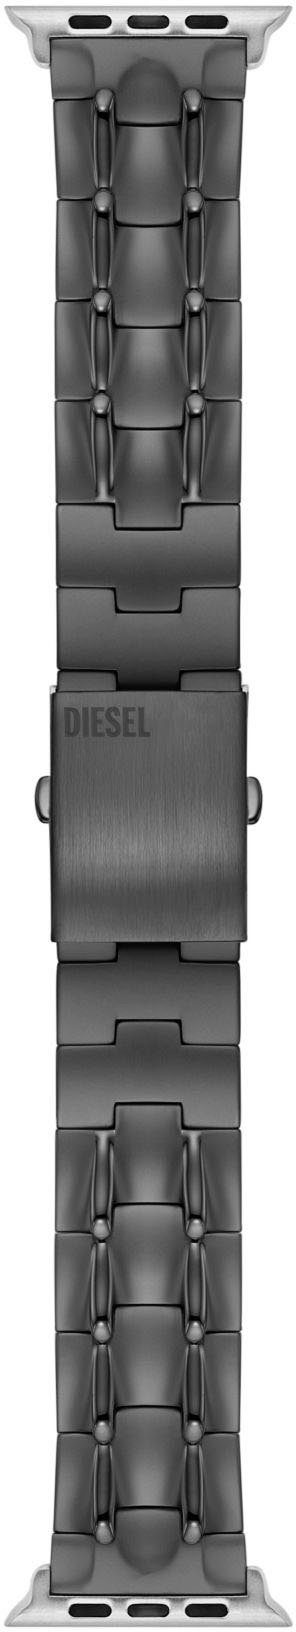 Diesel Smartwatch-Armband Apple Strap, DSS0015, Wechselarmband, Ersatzband, passend für die Apple Watch, Edelstahl